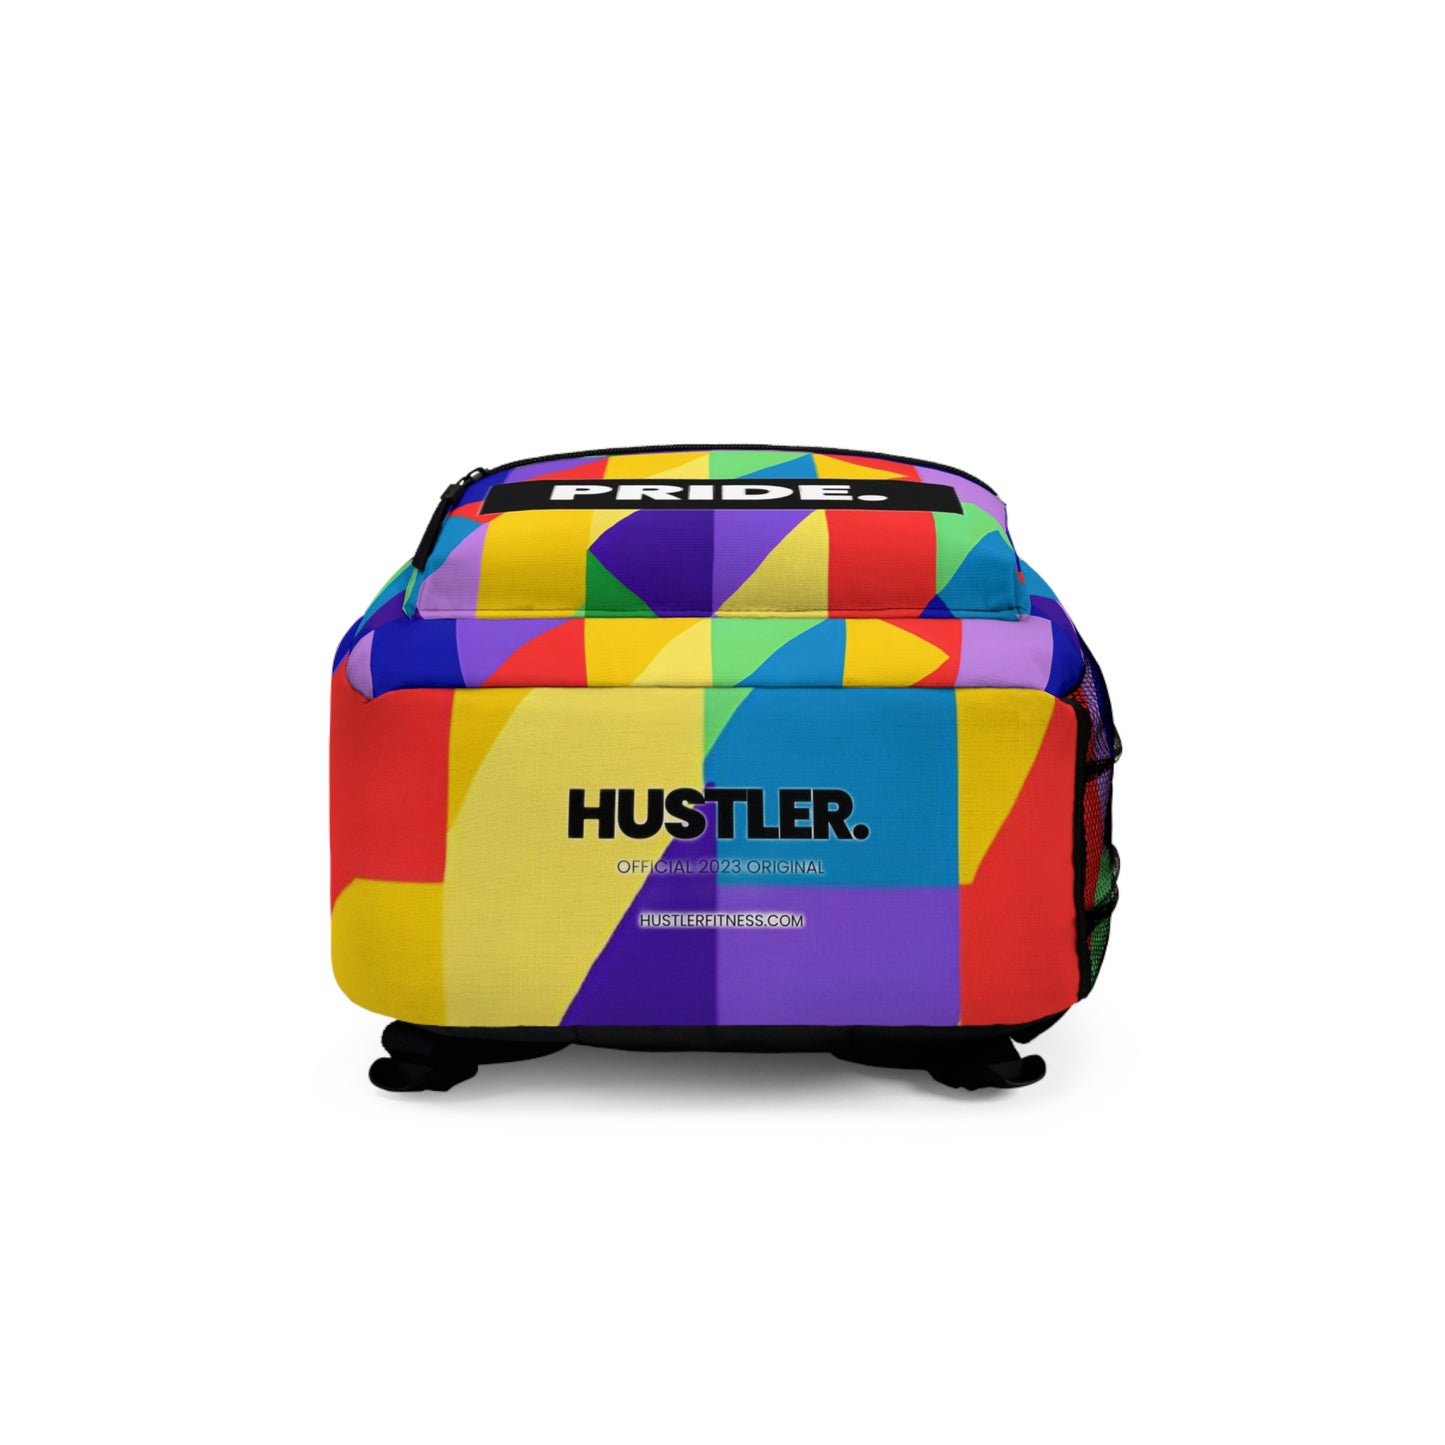 AuroraFlare - Gay Pride Backpack